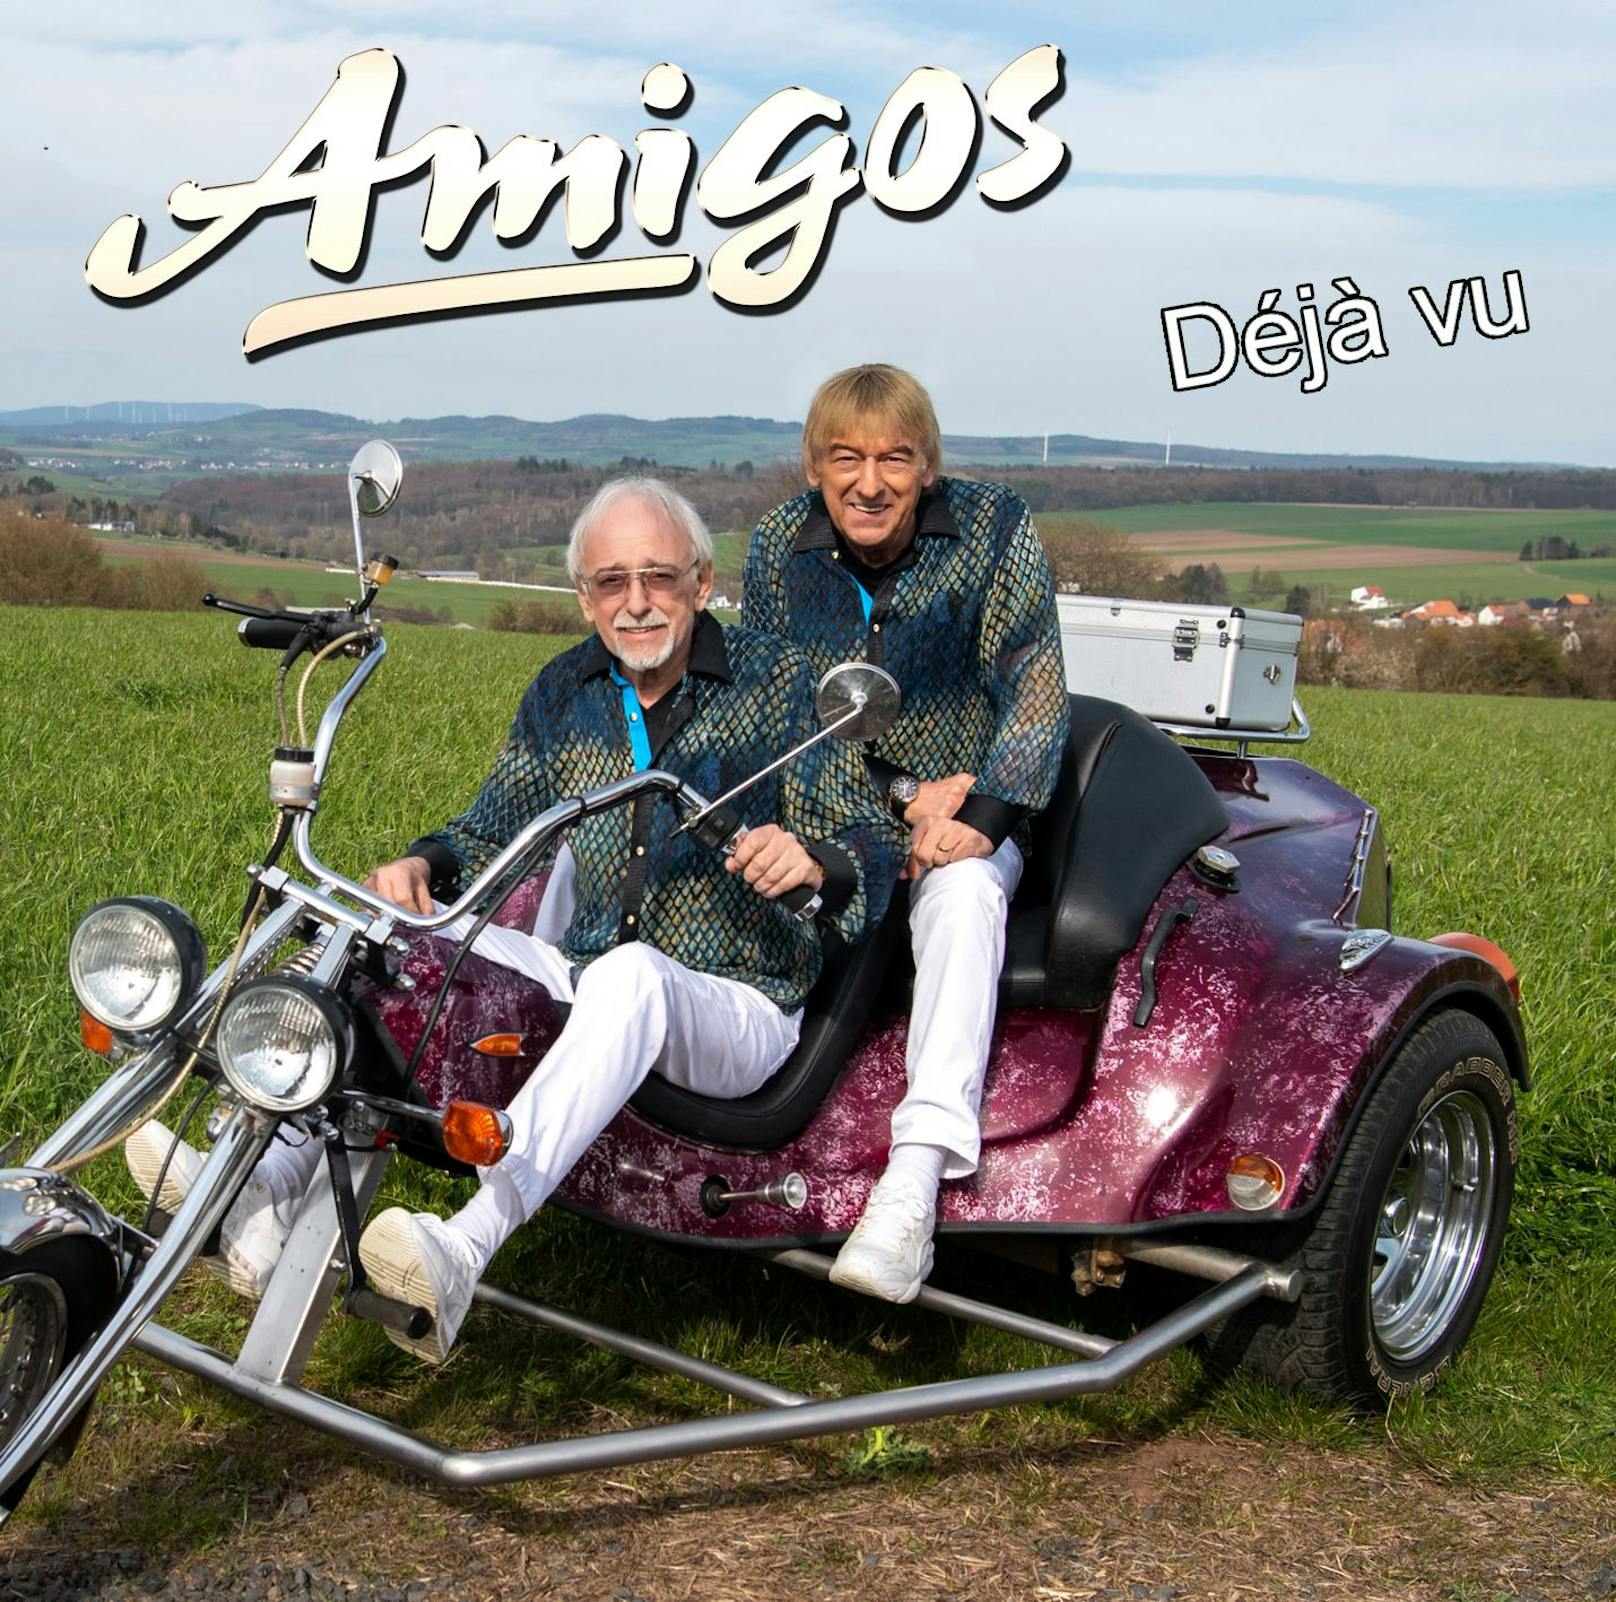 <strong>27.05.2021: Amigos "Deja vu"</strong>: Einmal gehört und schon vertraut – mit ihrer neuen Single zeigt sich das kultige Schlager-Duo von seiner romantischen Seite. Es ist die erste Auskopplung aus dem neuen Sommer-Album "Freiheit" (9.Juli). <a href="https://www.youtube.com/watch?v=UJOrd3CFNes">Hier geht's zum Video &gt;&gt;</a>